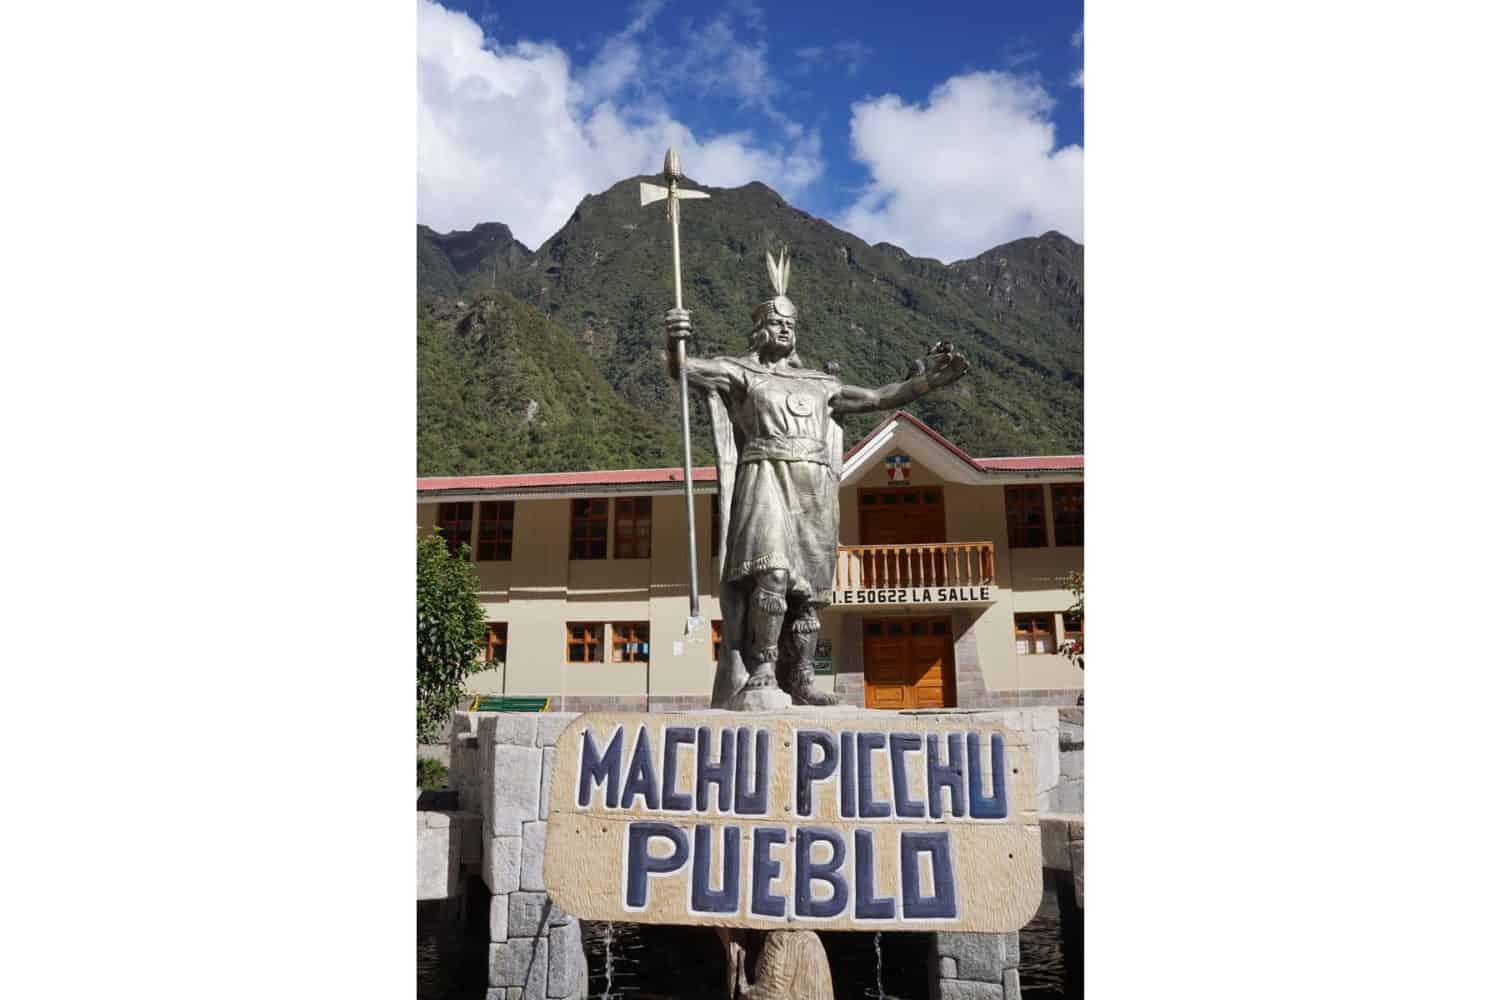 11Machu Picchu pueblo